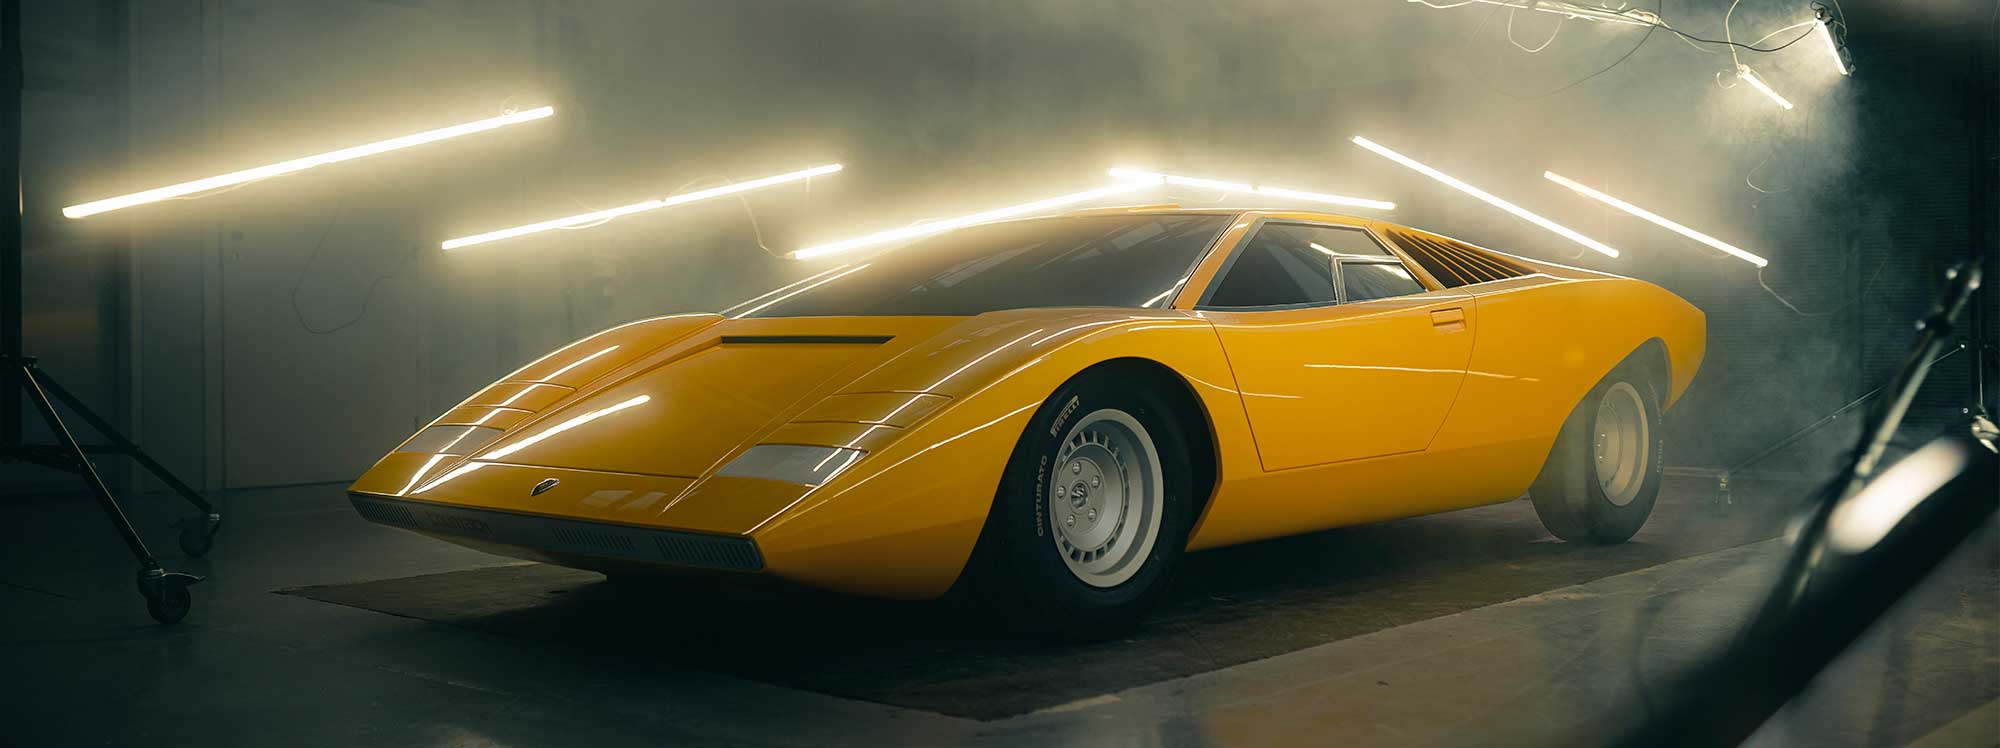 La reconstrucción del primer Lamborghini Countach